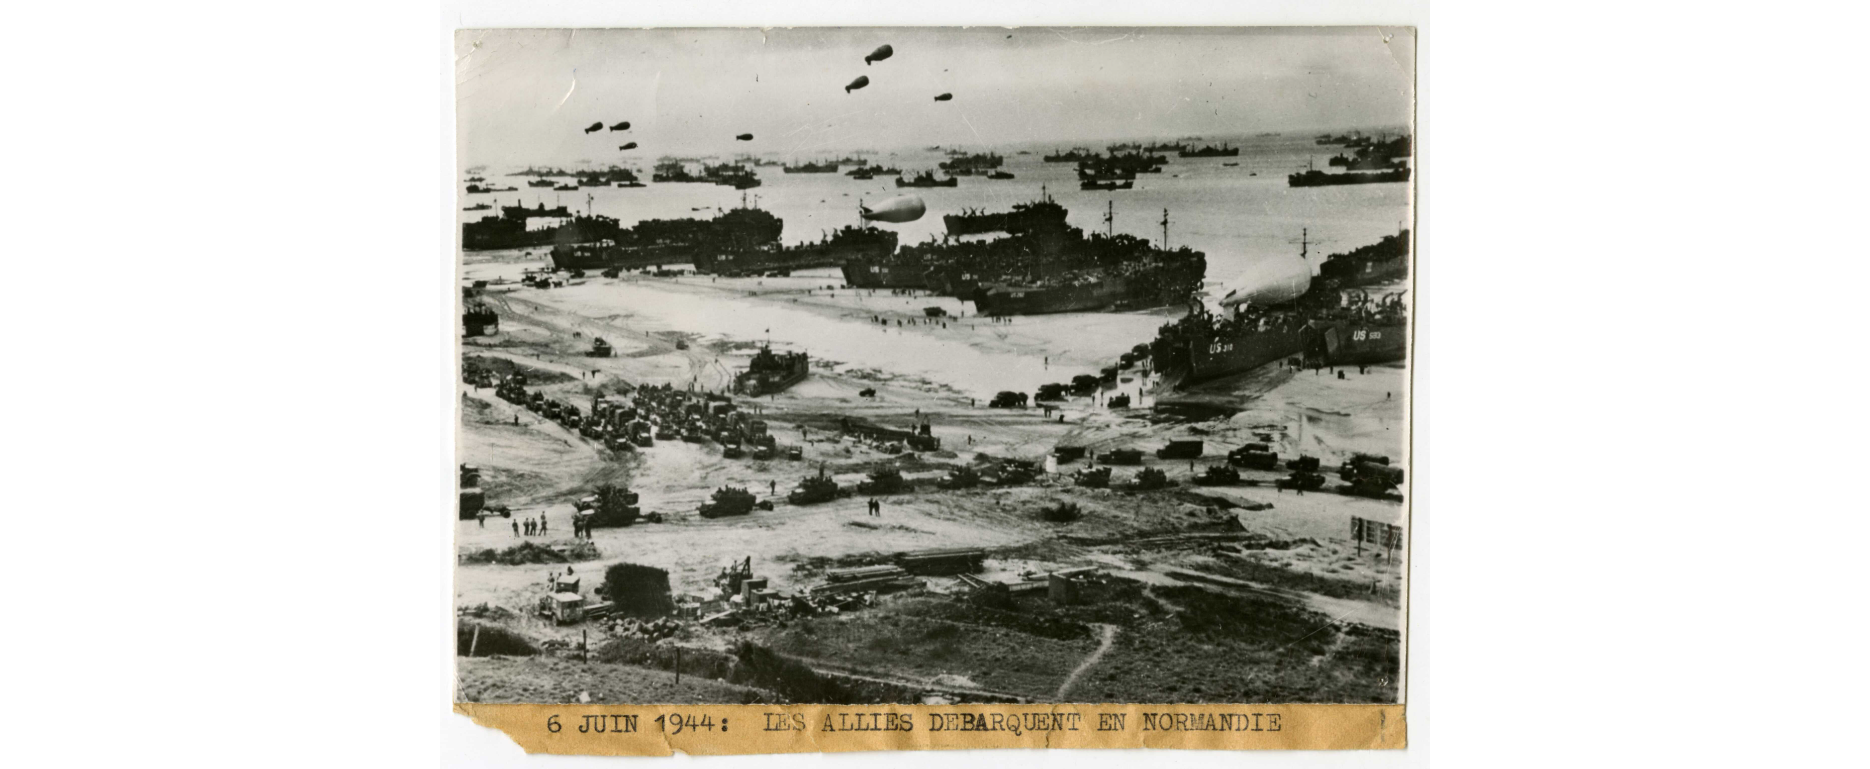 Le débarquement des Alliés le 6 juin 1944 sur les plages de Normandie. [Les Archives du Calvados - United press photo]